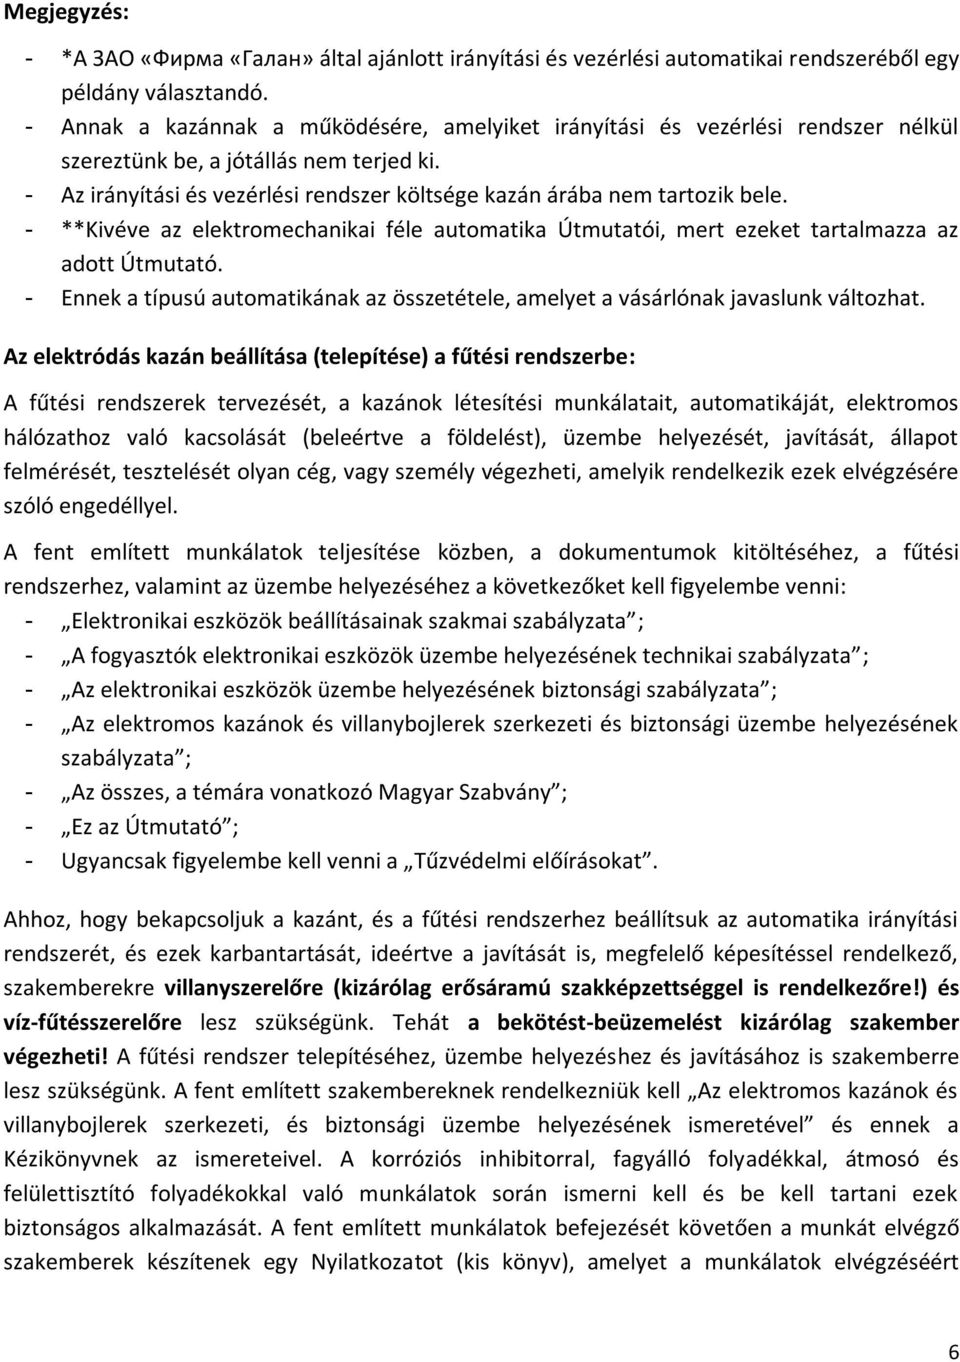 Használati-kezelési-karbantartási útmutató - PDF Ingyenes letöltés